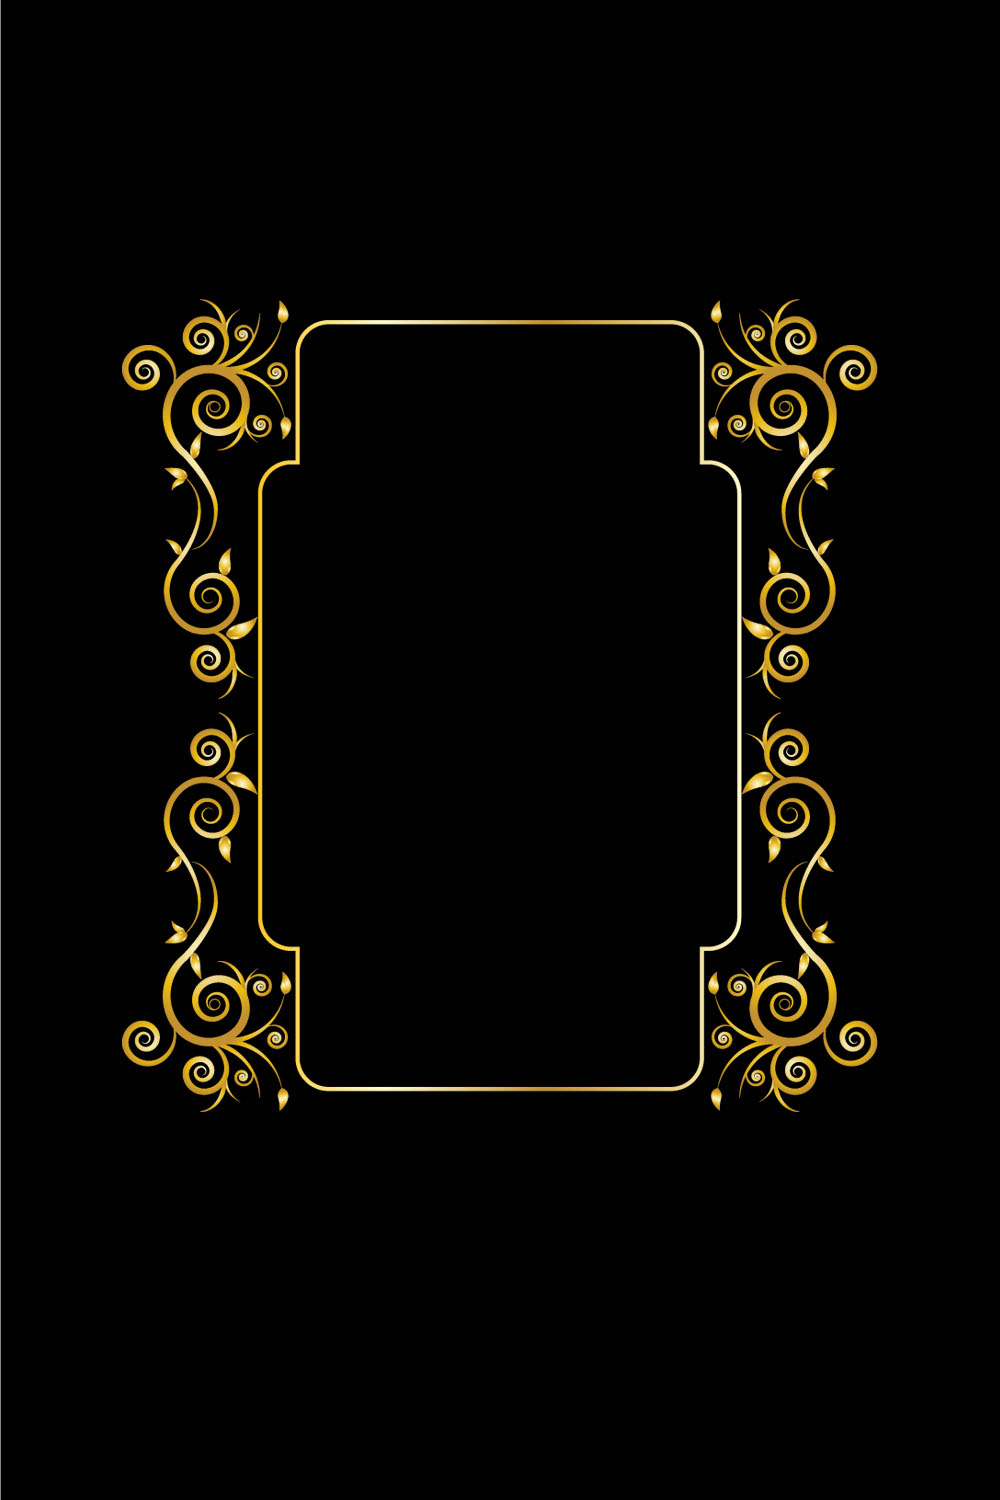 Floral Golden Ornament Design on Black Color pinterest image.